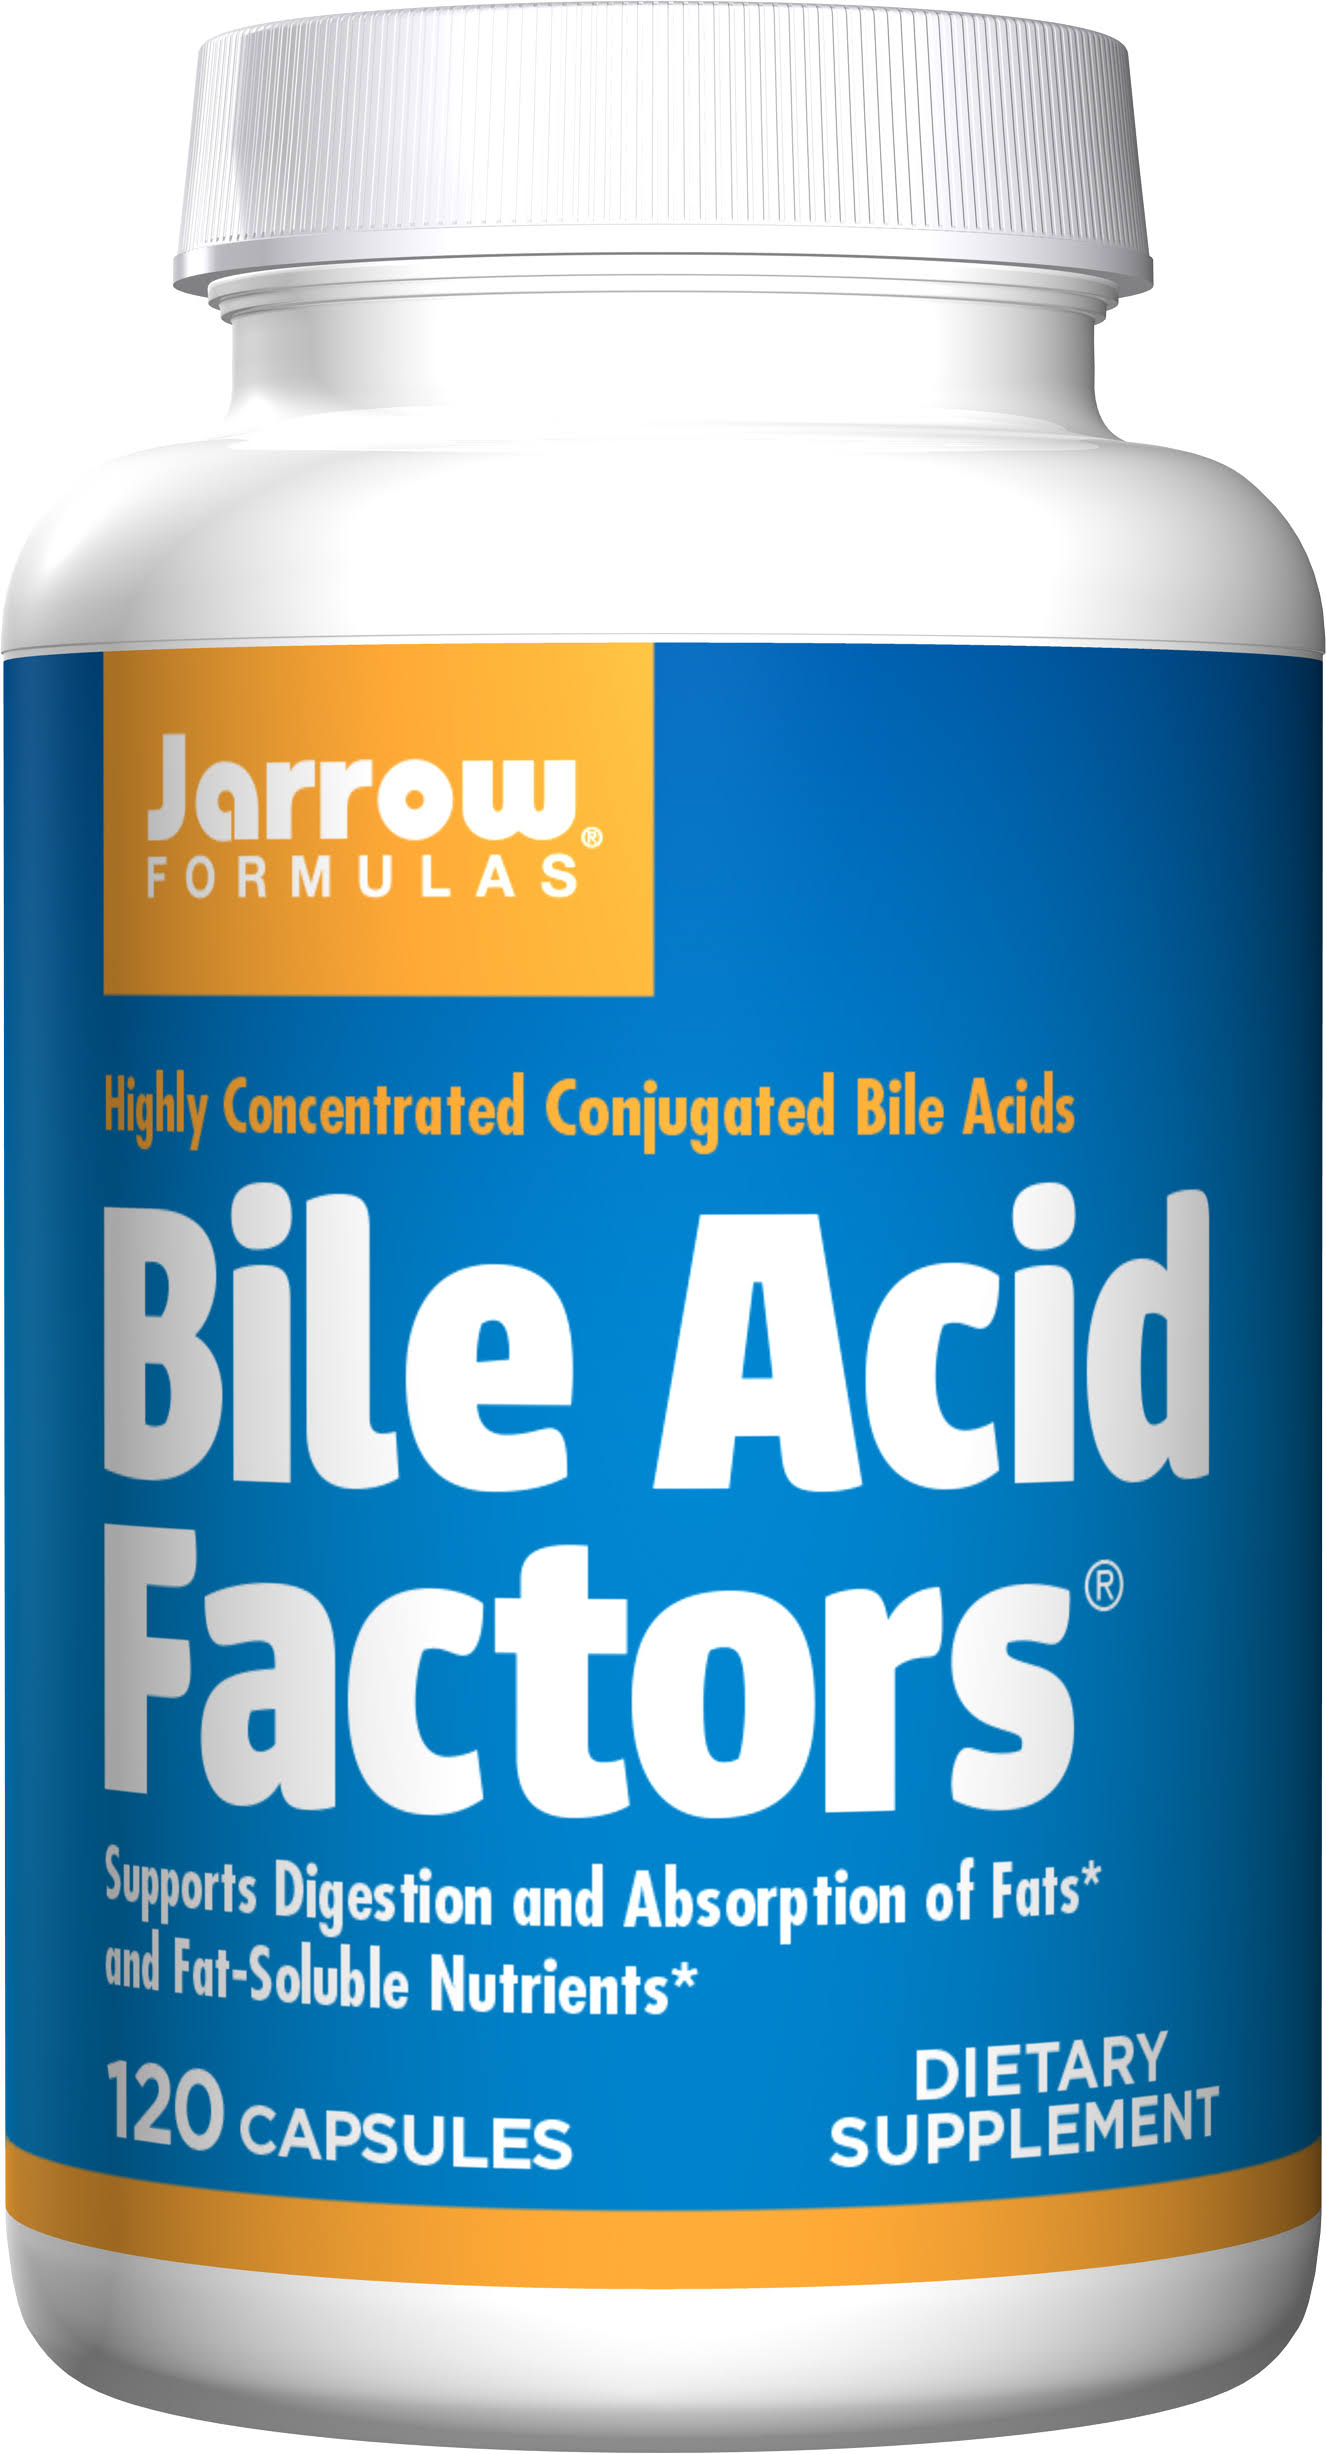 Jarrow Formulas Bile Acid Factors - 90 Capsules, 333mg